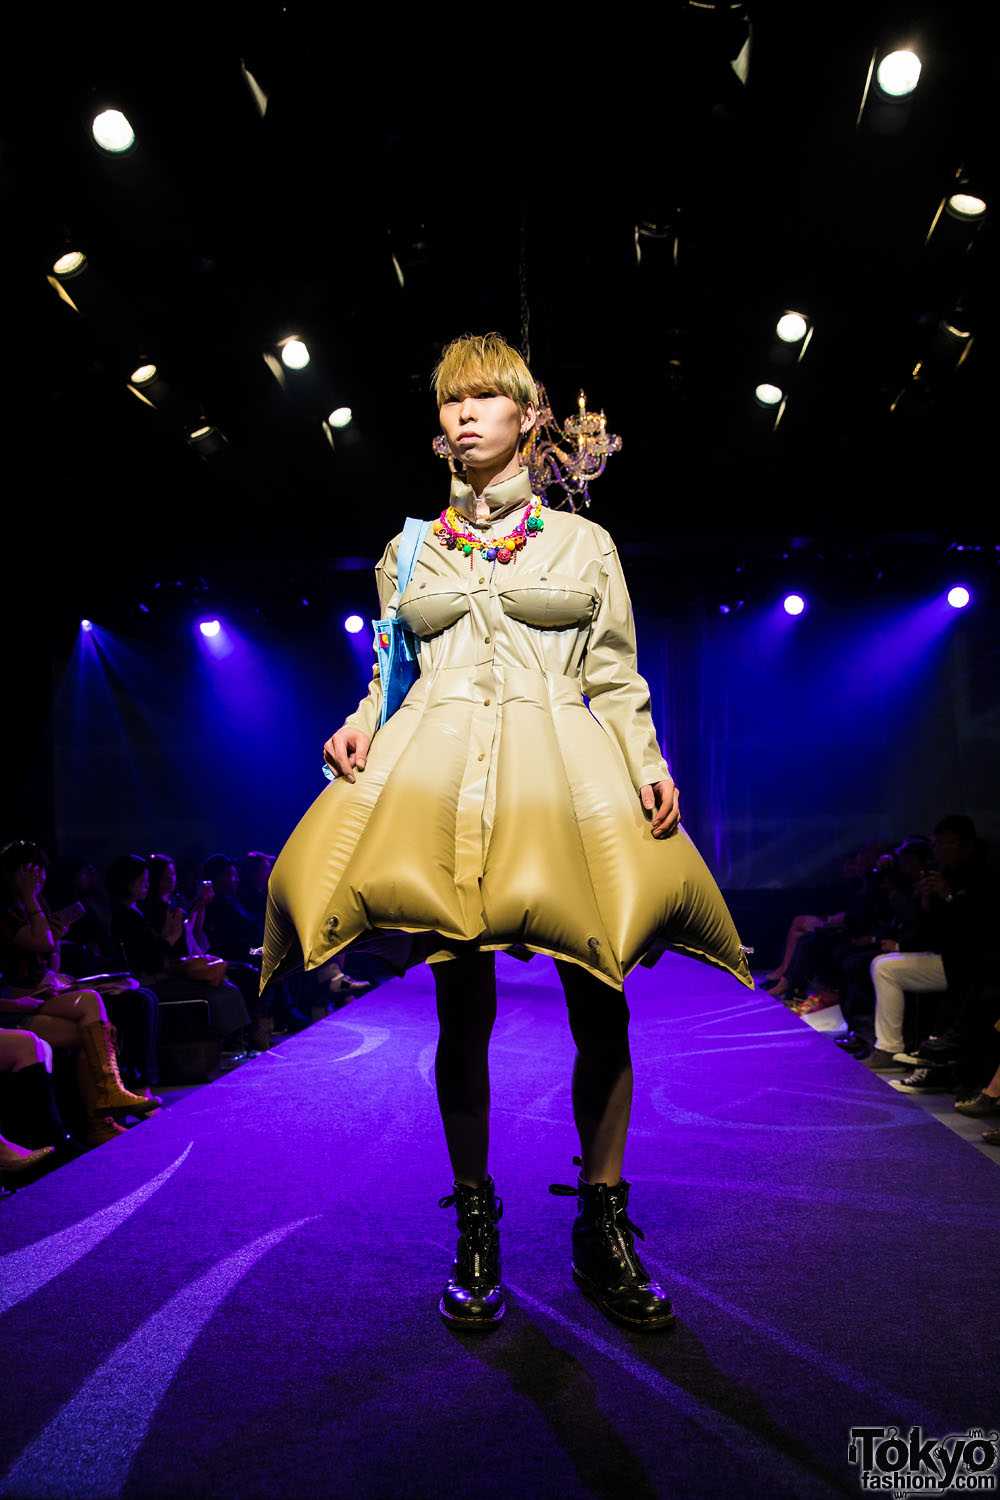 Michiko koshino and her incredible fashion | dantemag